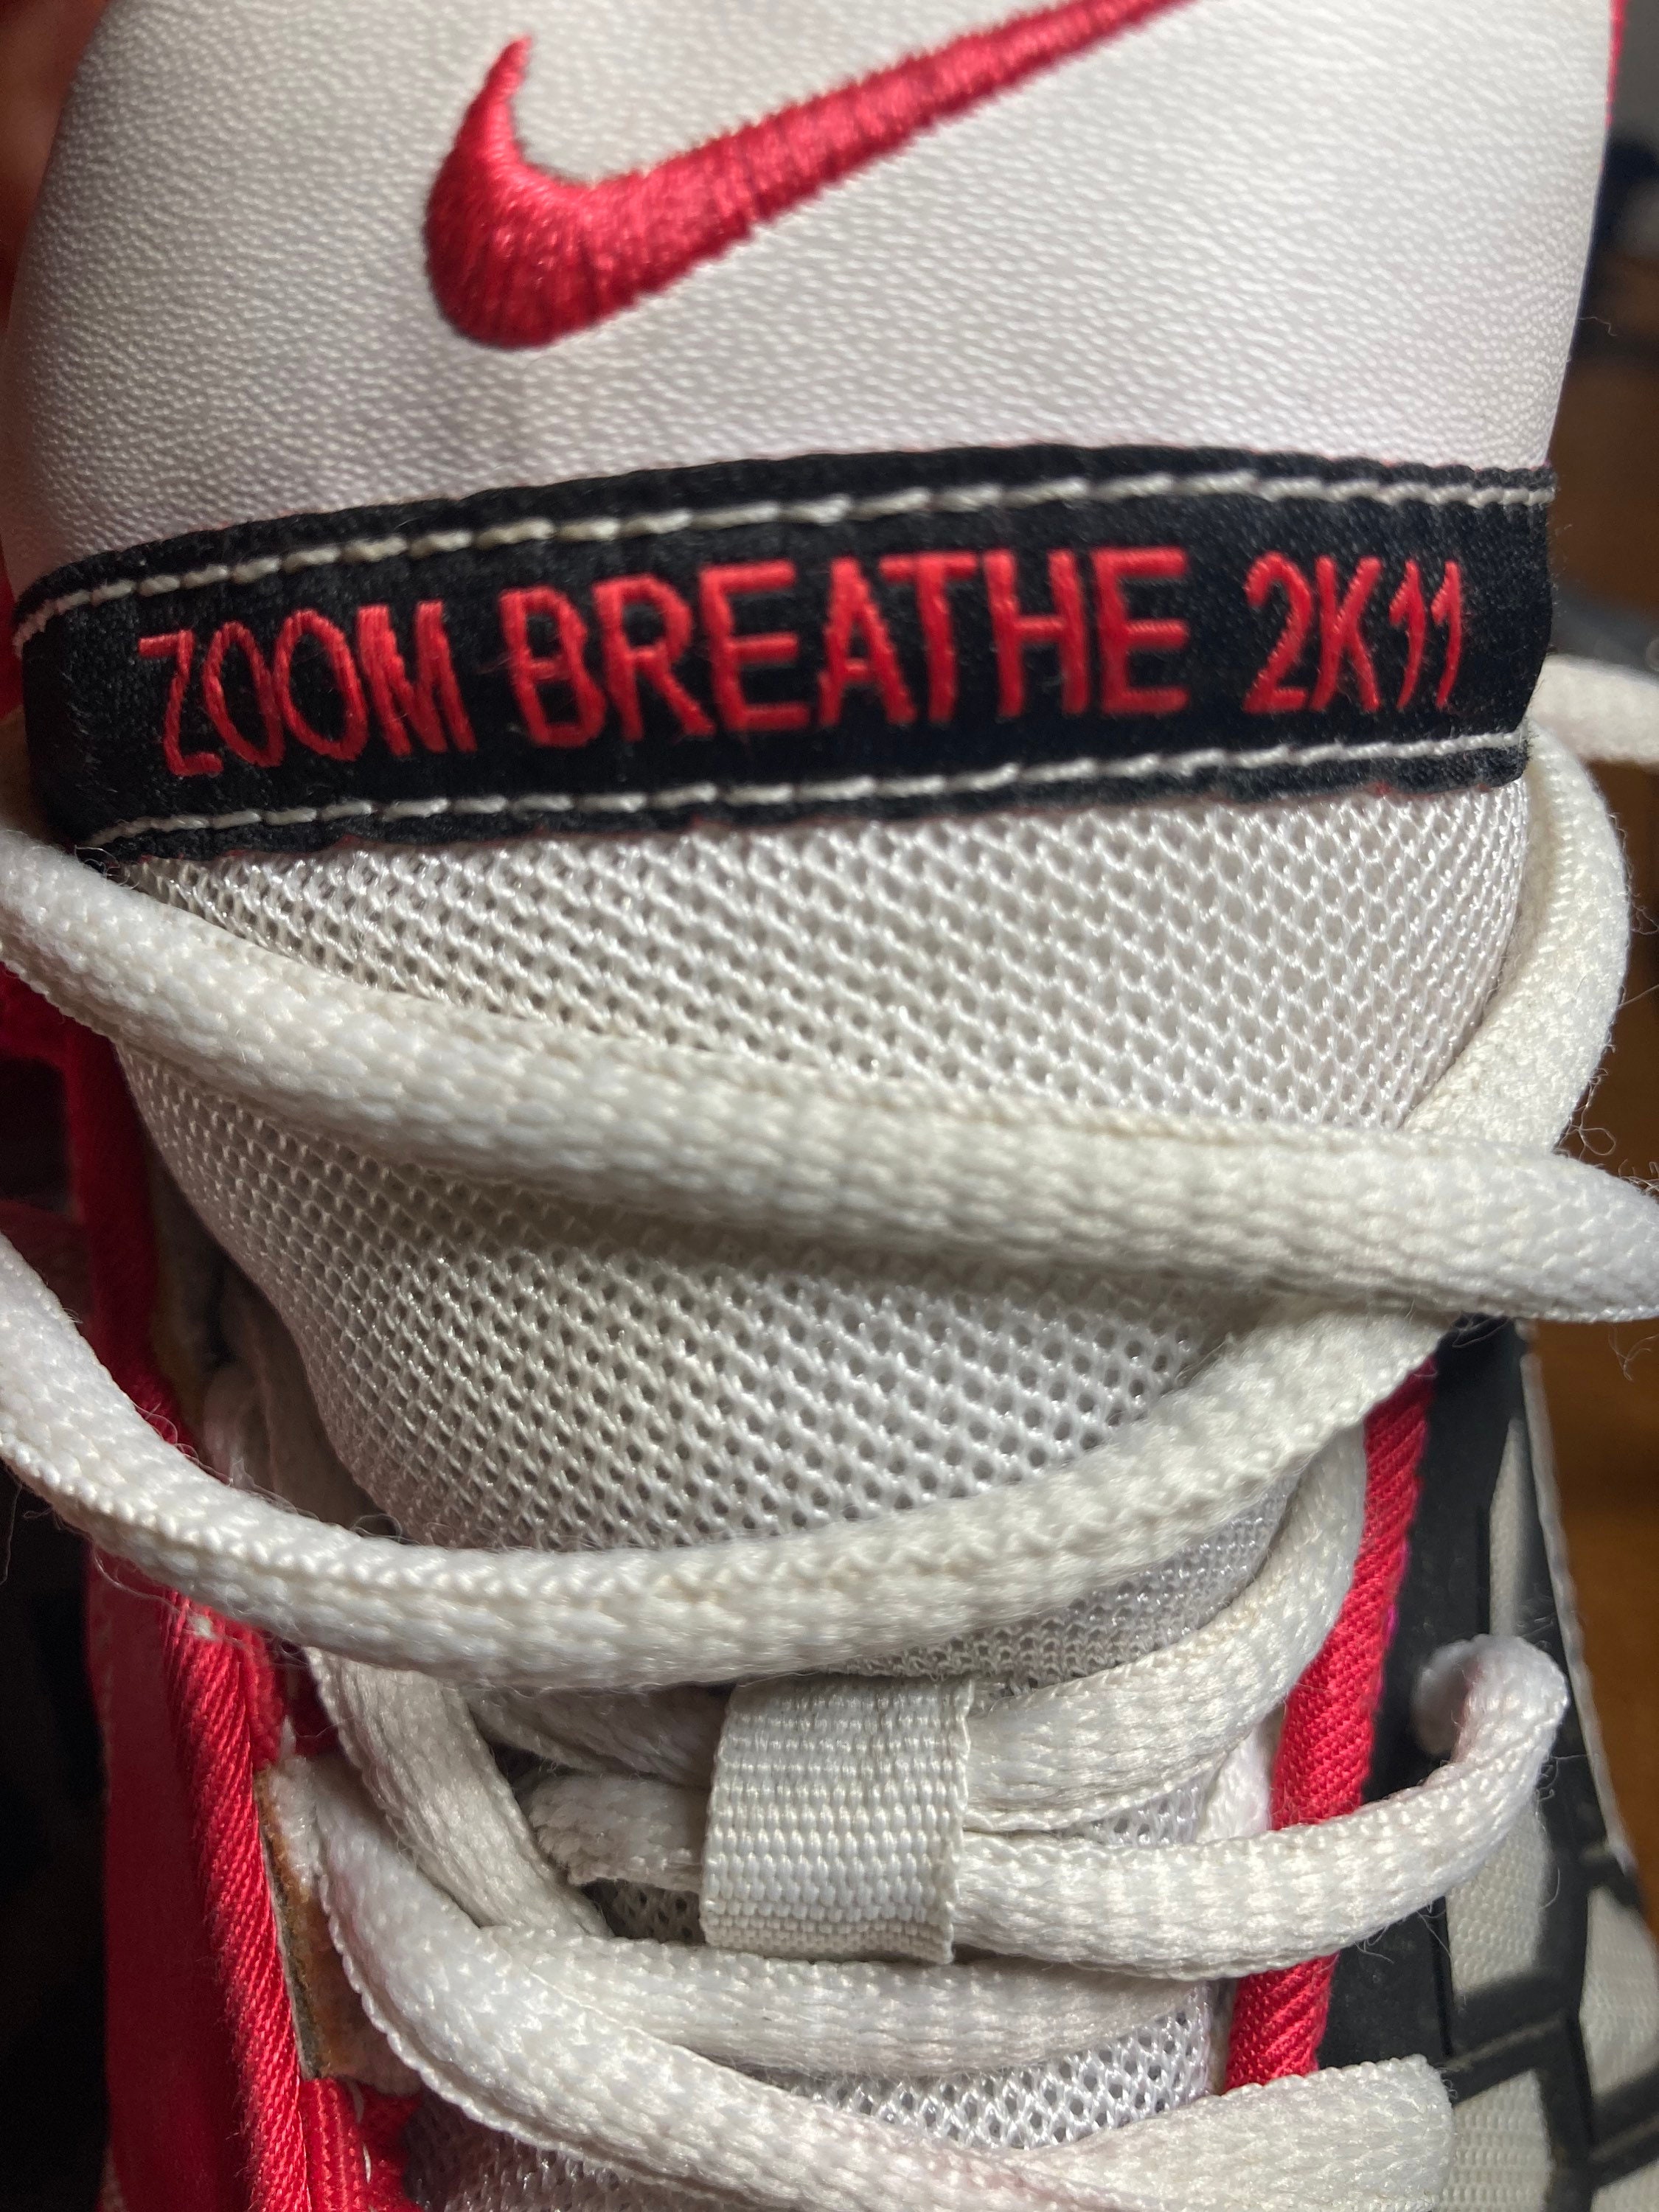 Manía animación Por favor Nike Zoom Breathe 2K11 Size 14 - Etsy